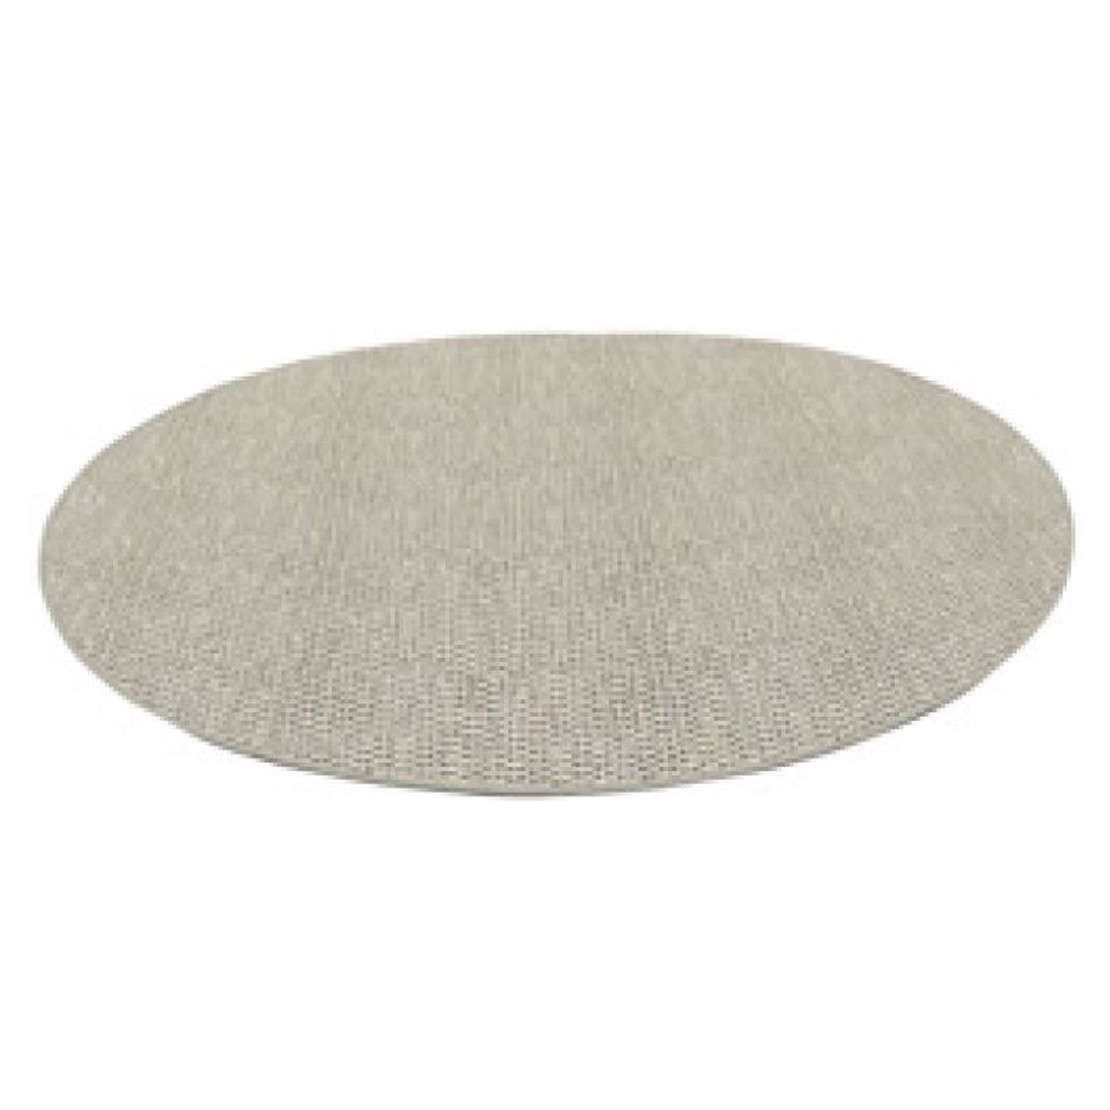 Outdoor rug 150 cm. Round Latte